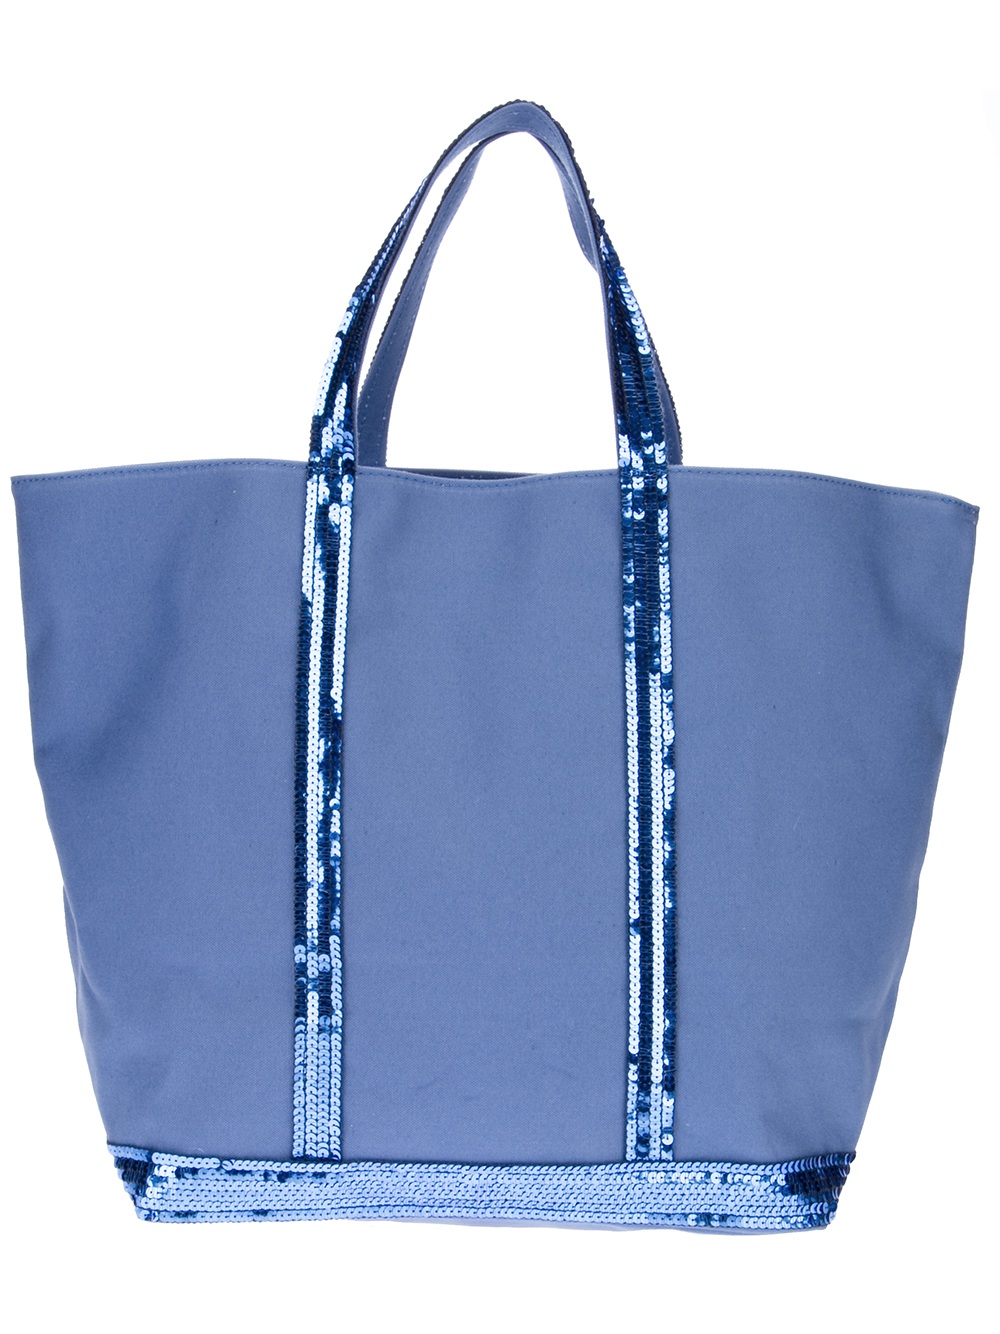 Vanessa Bruno Sequin Embellished Tote Bag in Blue | Lyst